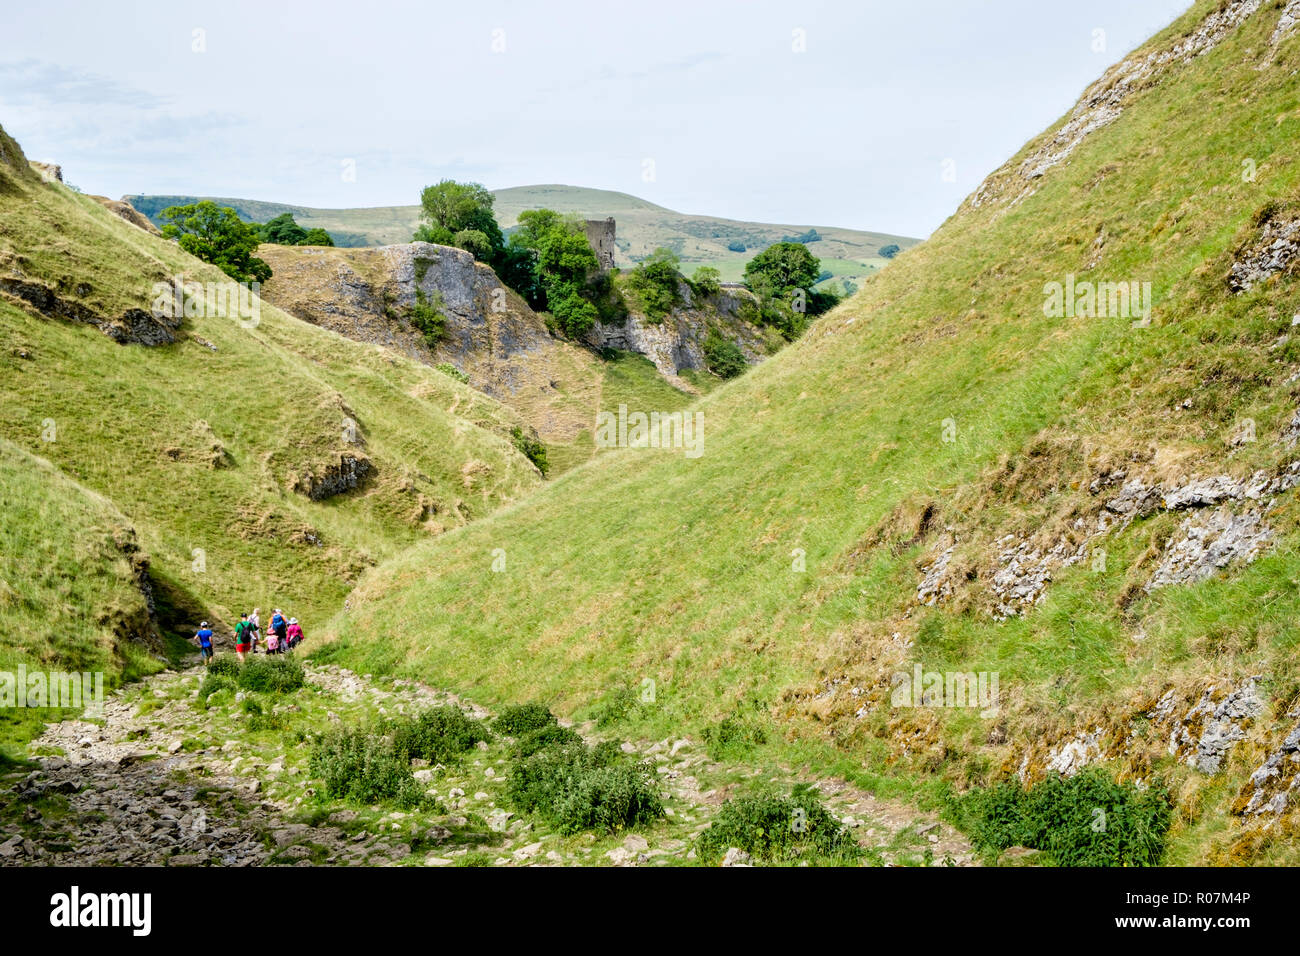 Walkers scendendo il Sentiero pietroso di calcare modo in grotta Dale, con: Peveril Castle in distanza, Derbyshire, Peak District, England, Regno Unito Foto Stock